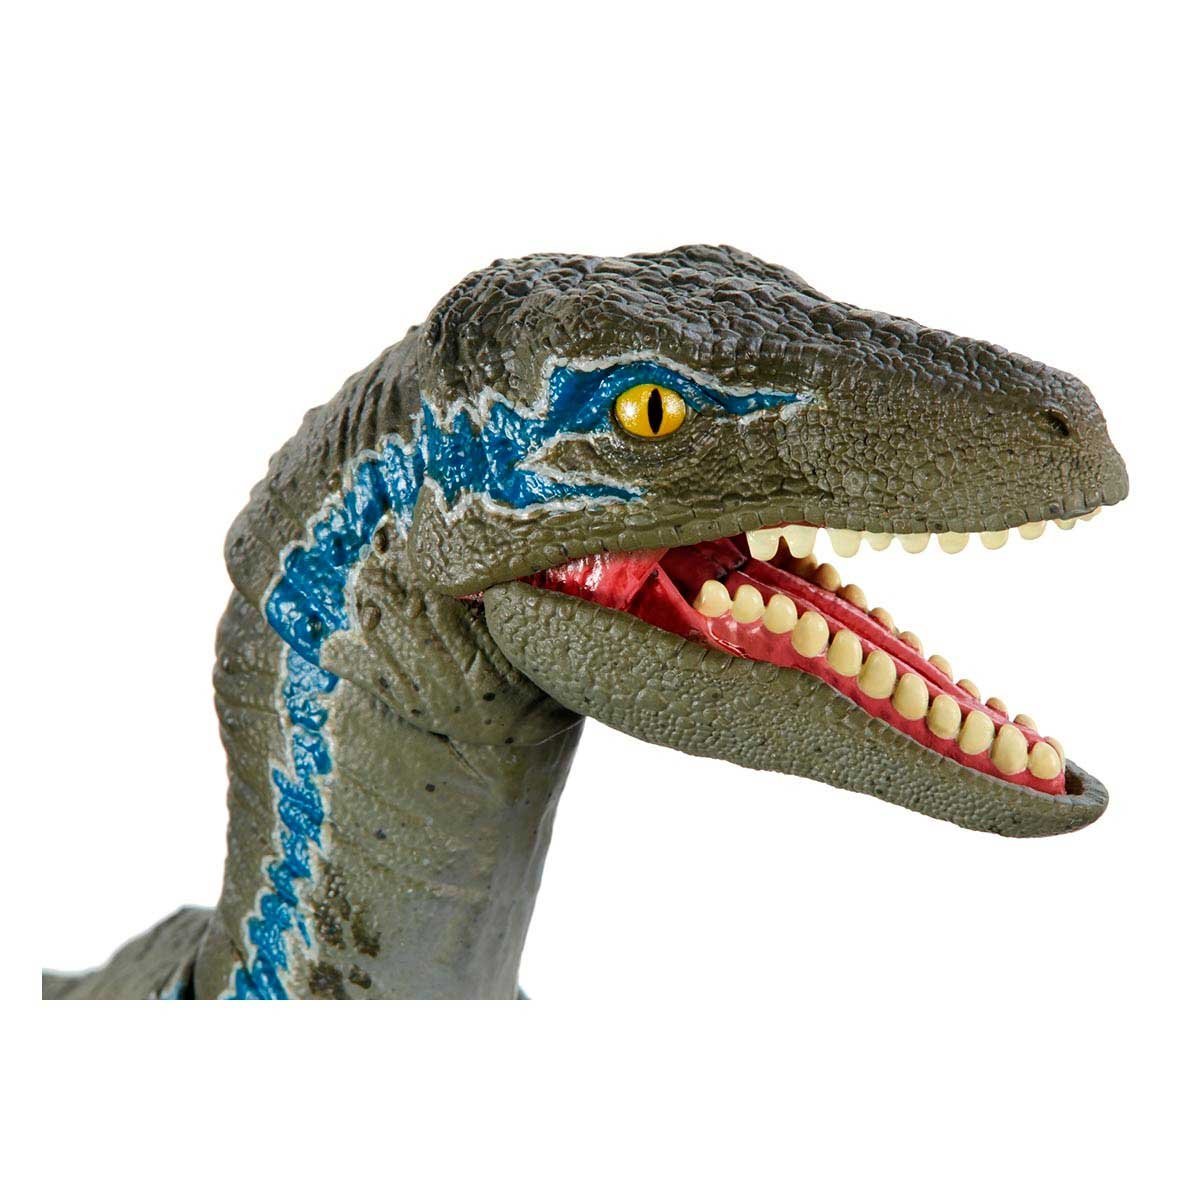 Dinosaurio de Juguete Jurassic World Blue Colección Deluxe